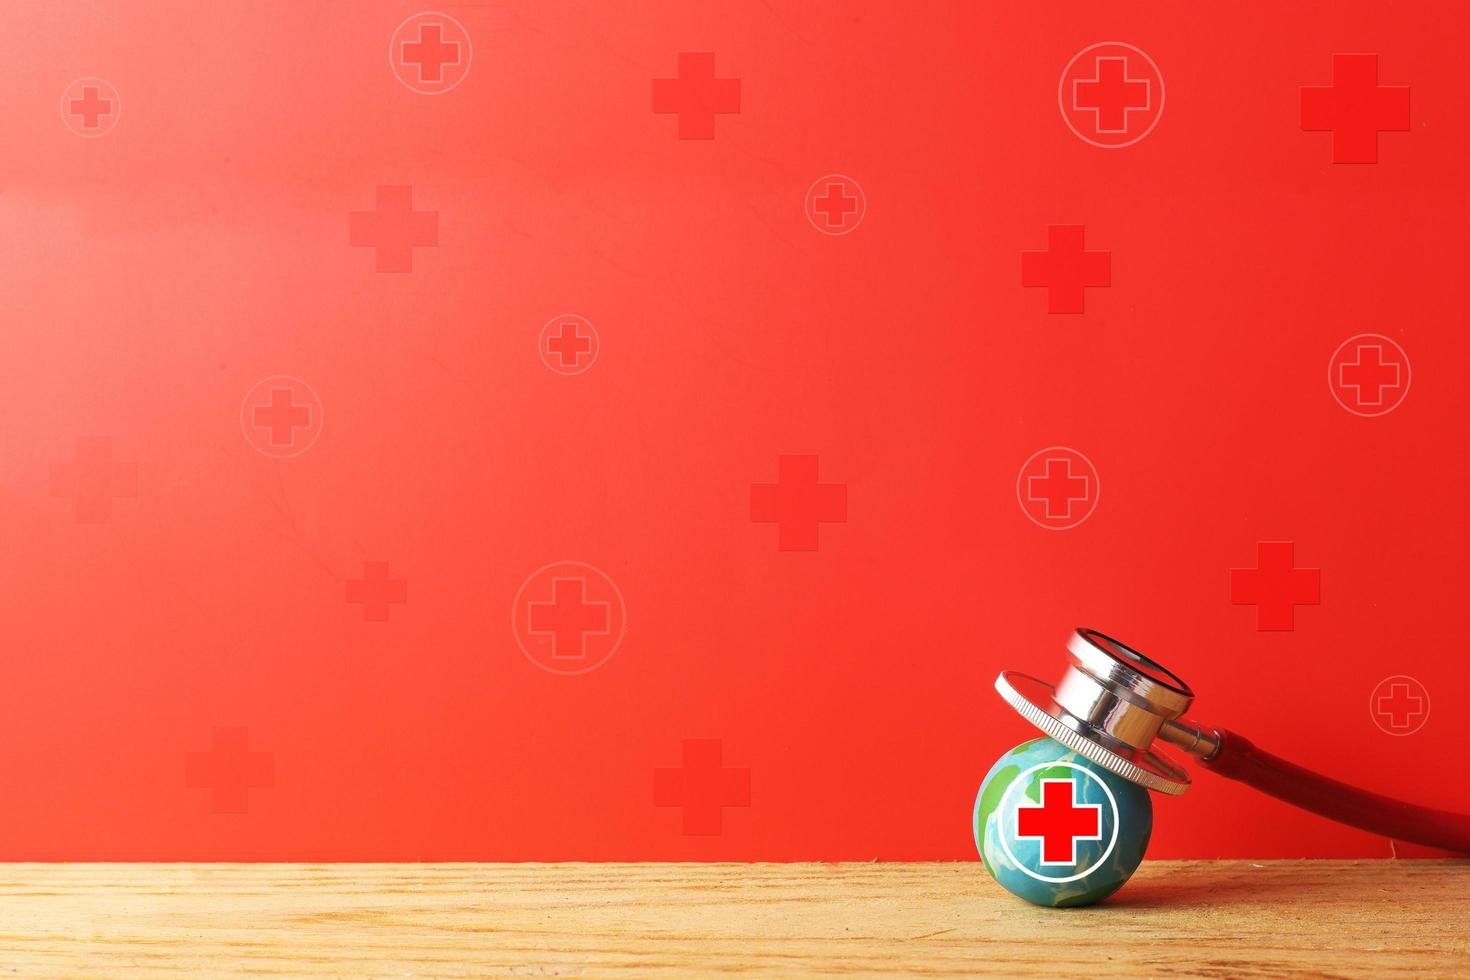 Giornata mondiale della croce rossa e della mezzaluna rossa - donatore di sangue - concetto di assistenza sanitaria internazionale - terra con croce rossa e stetoscopio su sfondo rosso foto